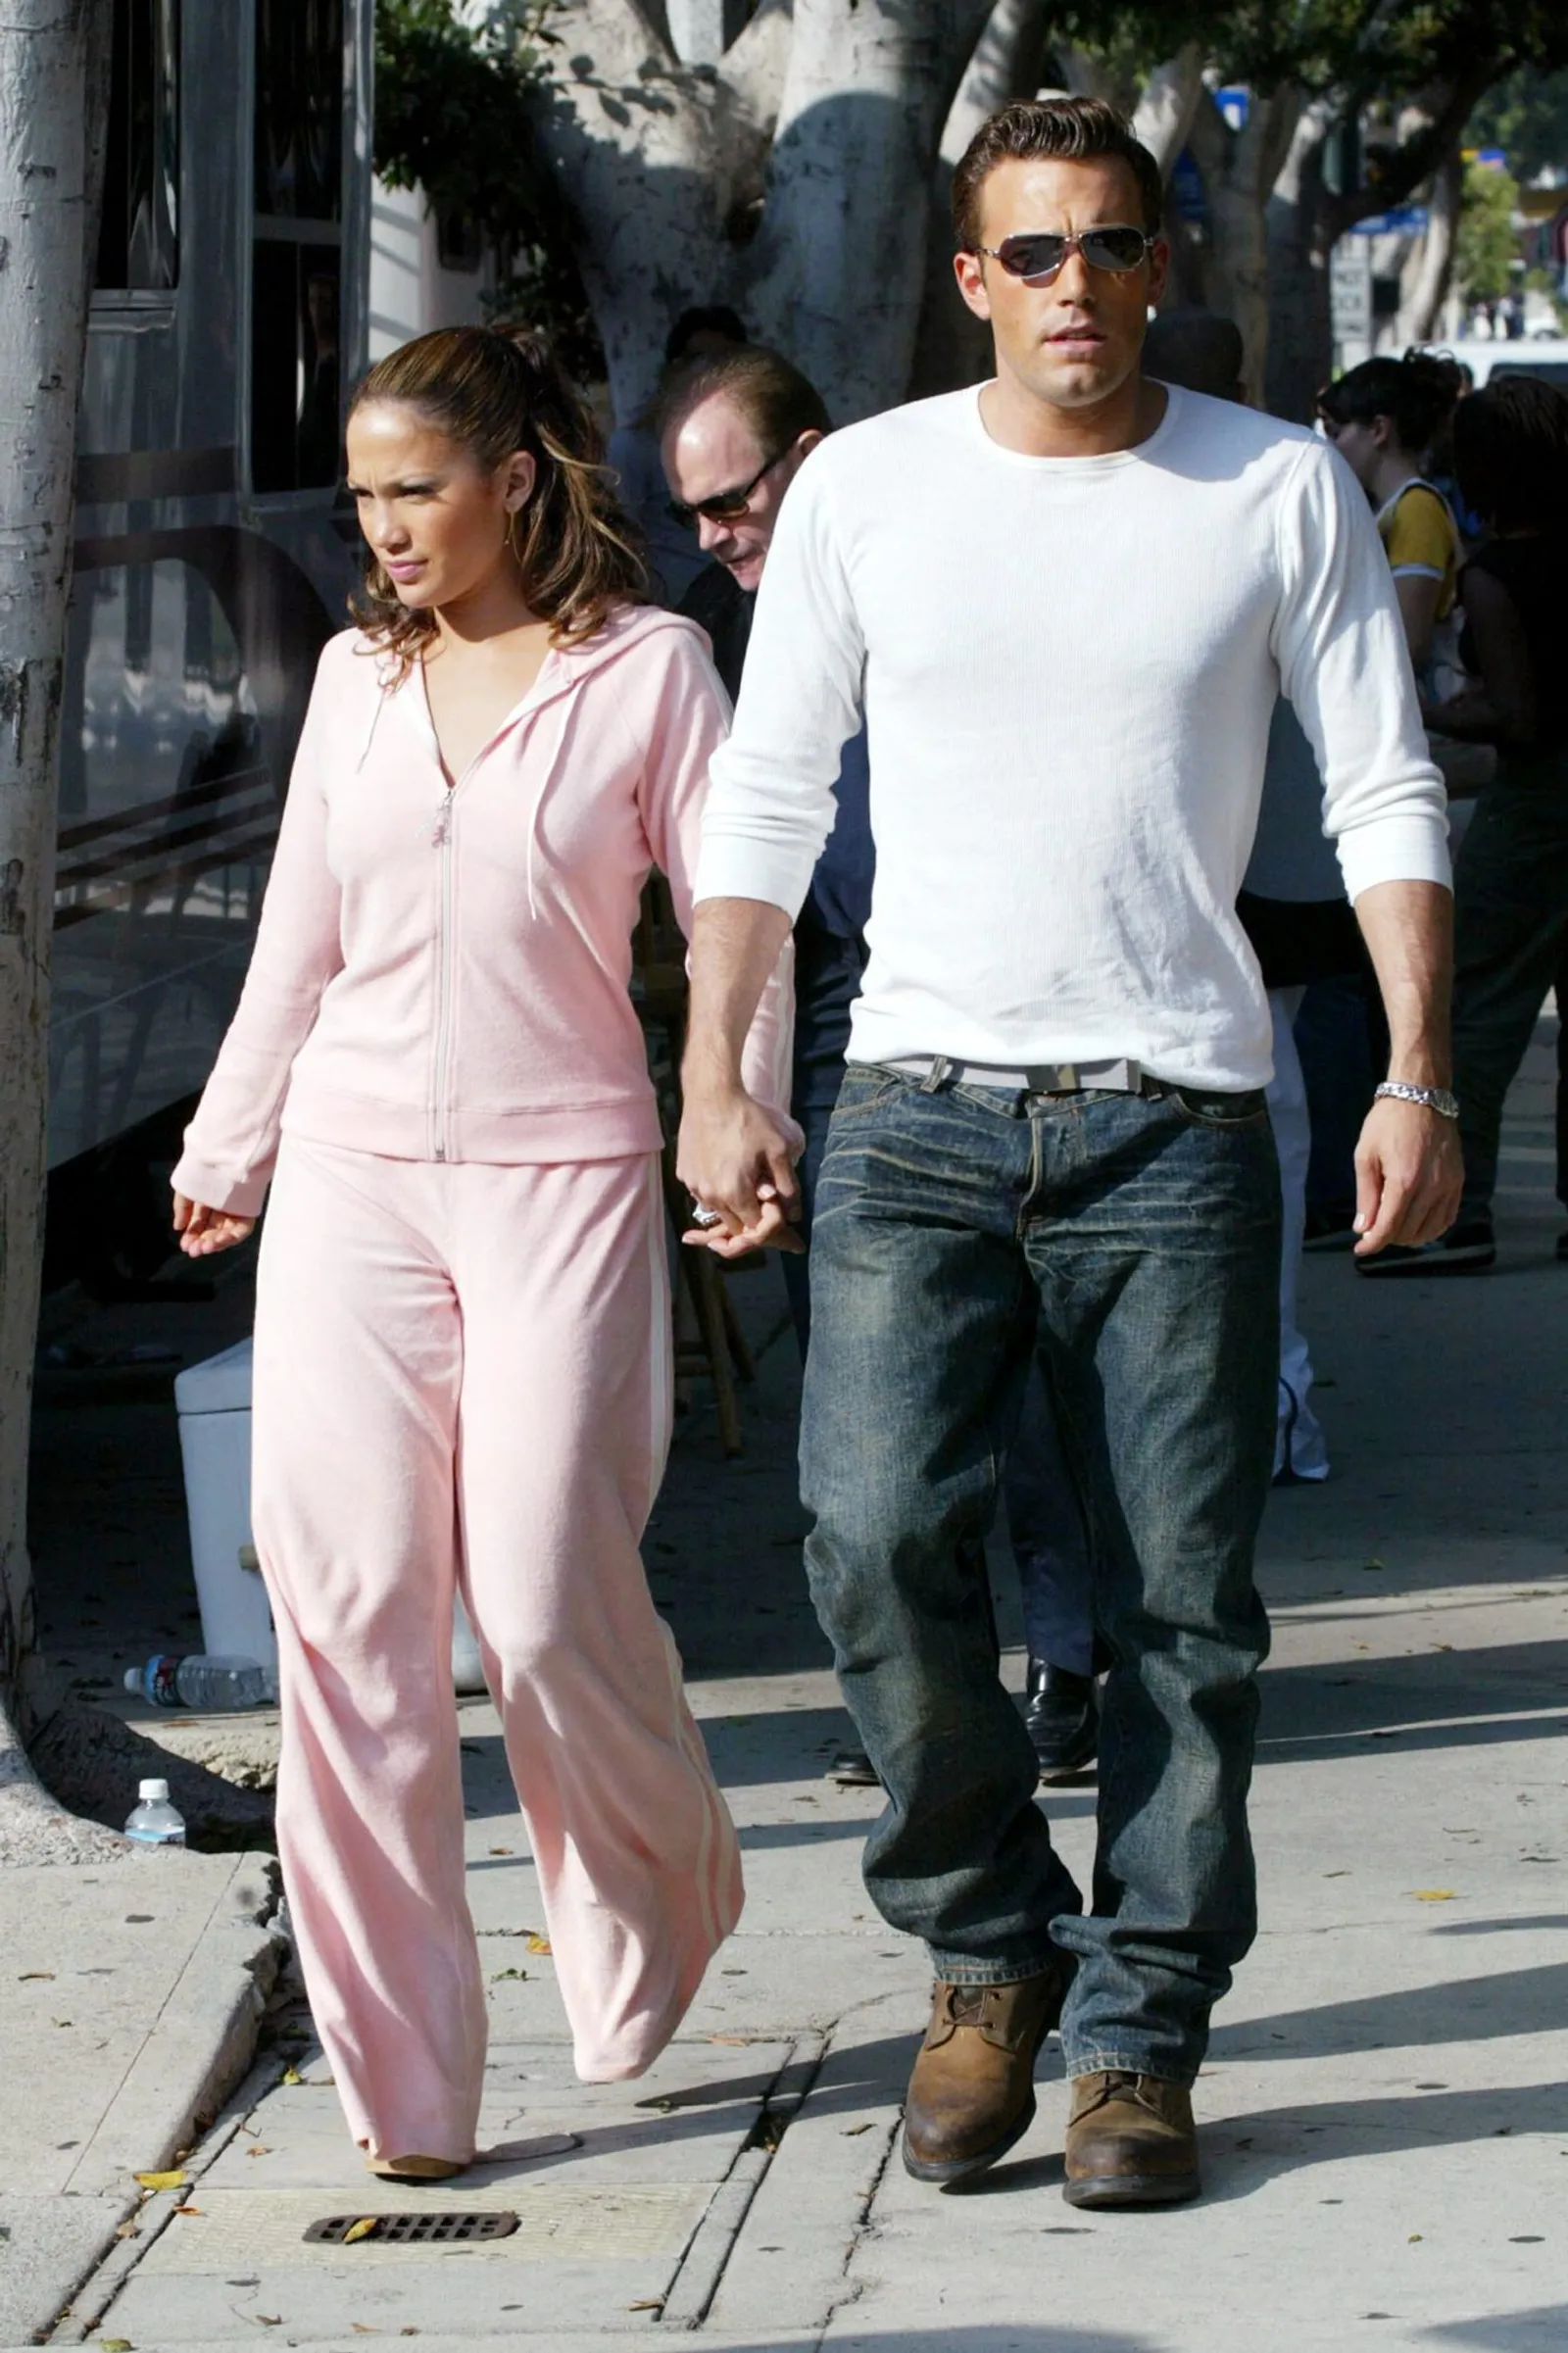 Gaya Mesra Jennifer Lopez & Ben Affleck di Masa Lalu, Ketahuan CLBK!